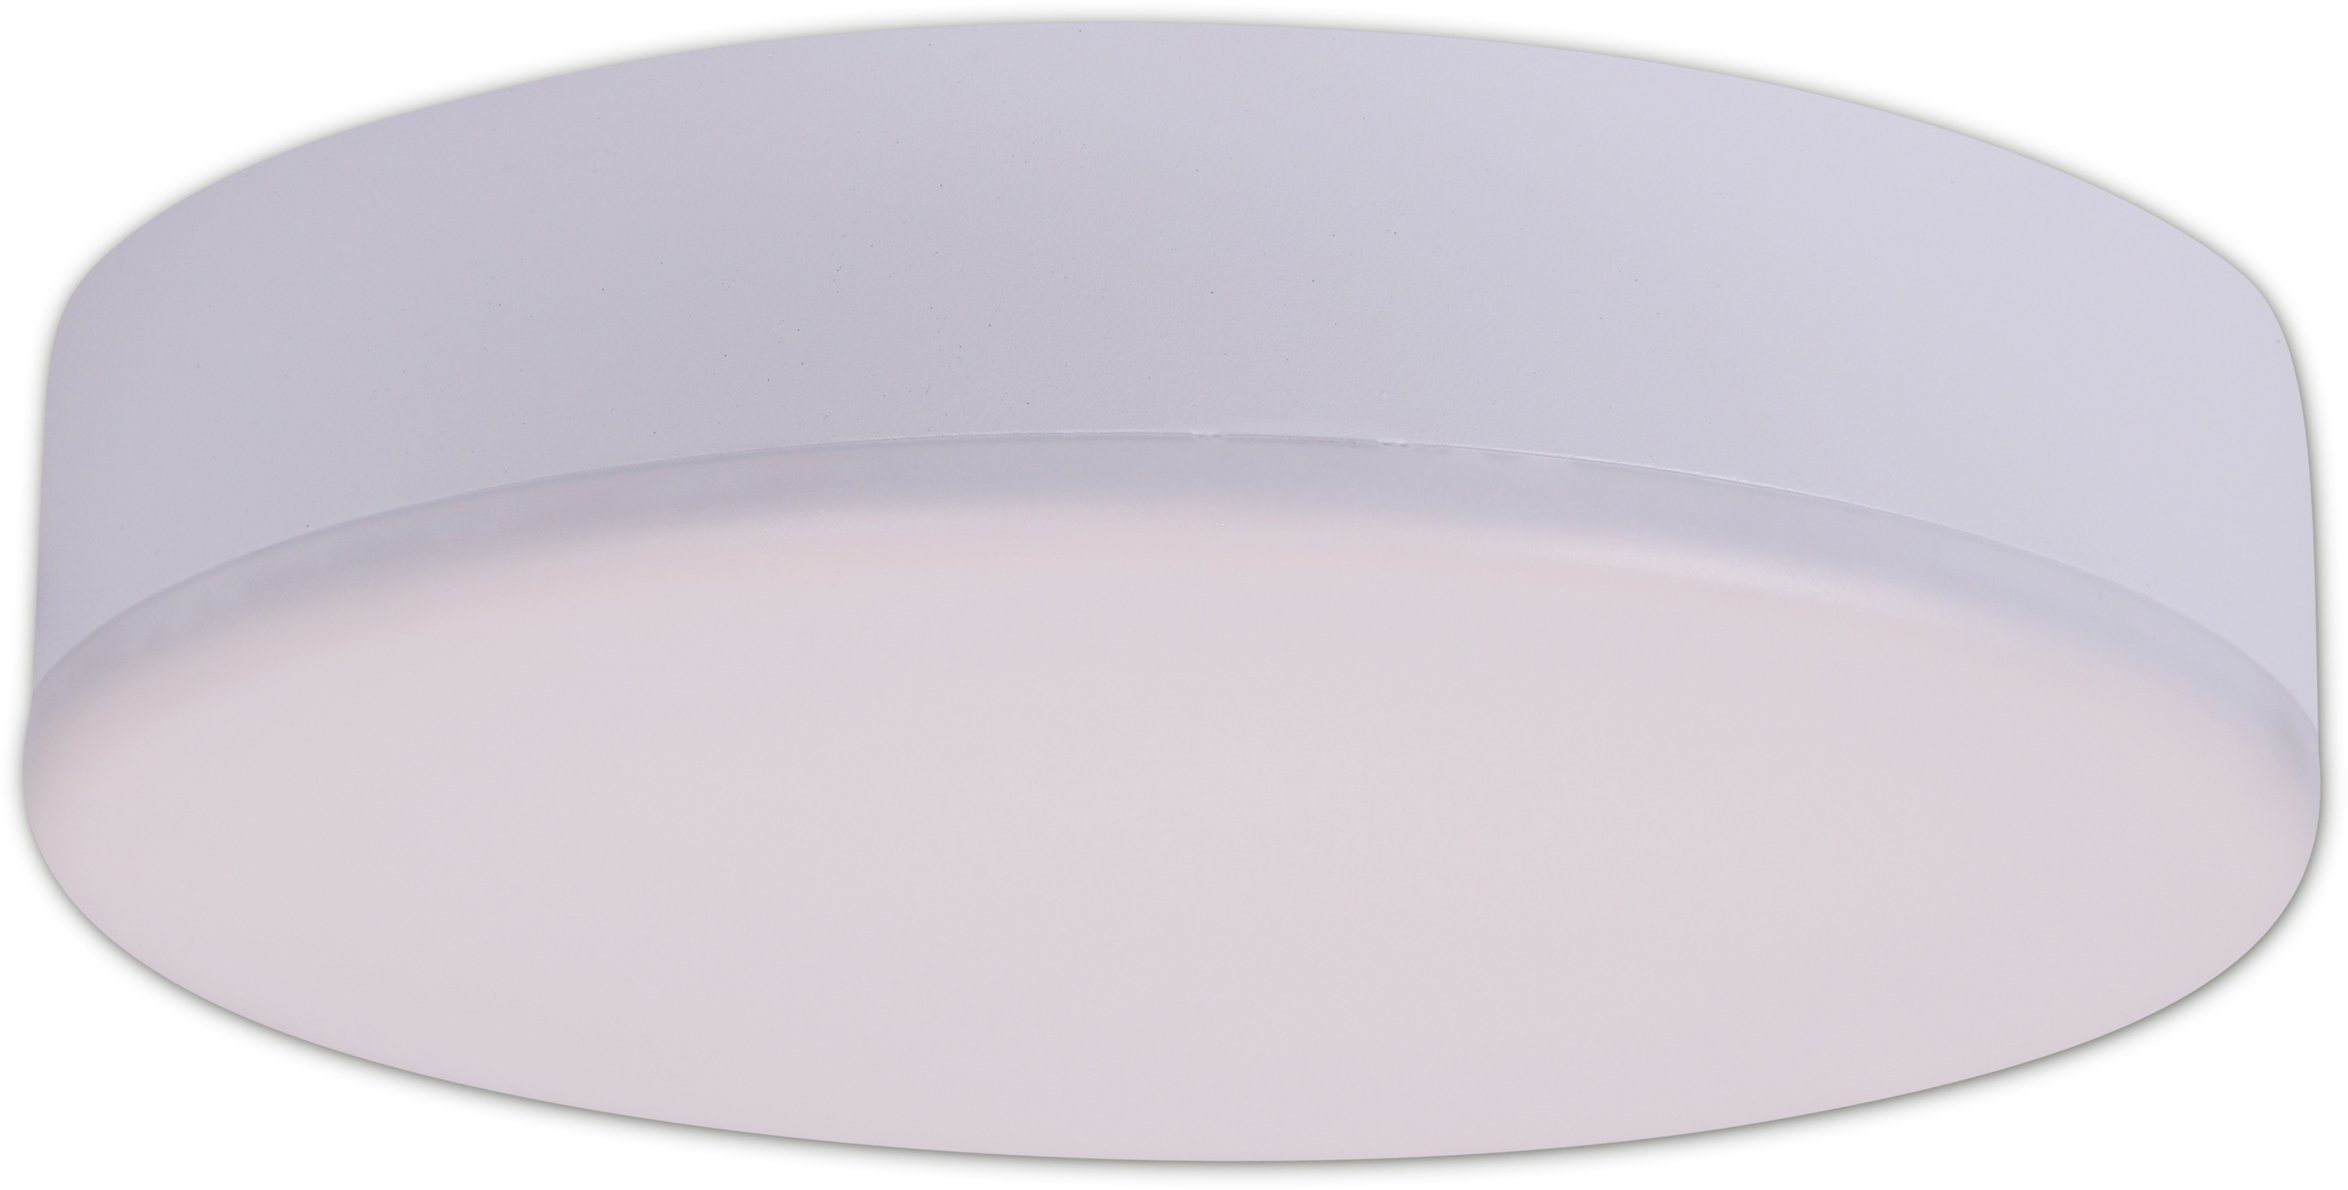 A Sula, Duschbereich Bade- Einbauleuchte LED näve im einsetzbar, fest LED integriert, und Neutralweiß, Energieeffizienzklasse